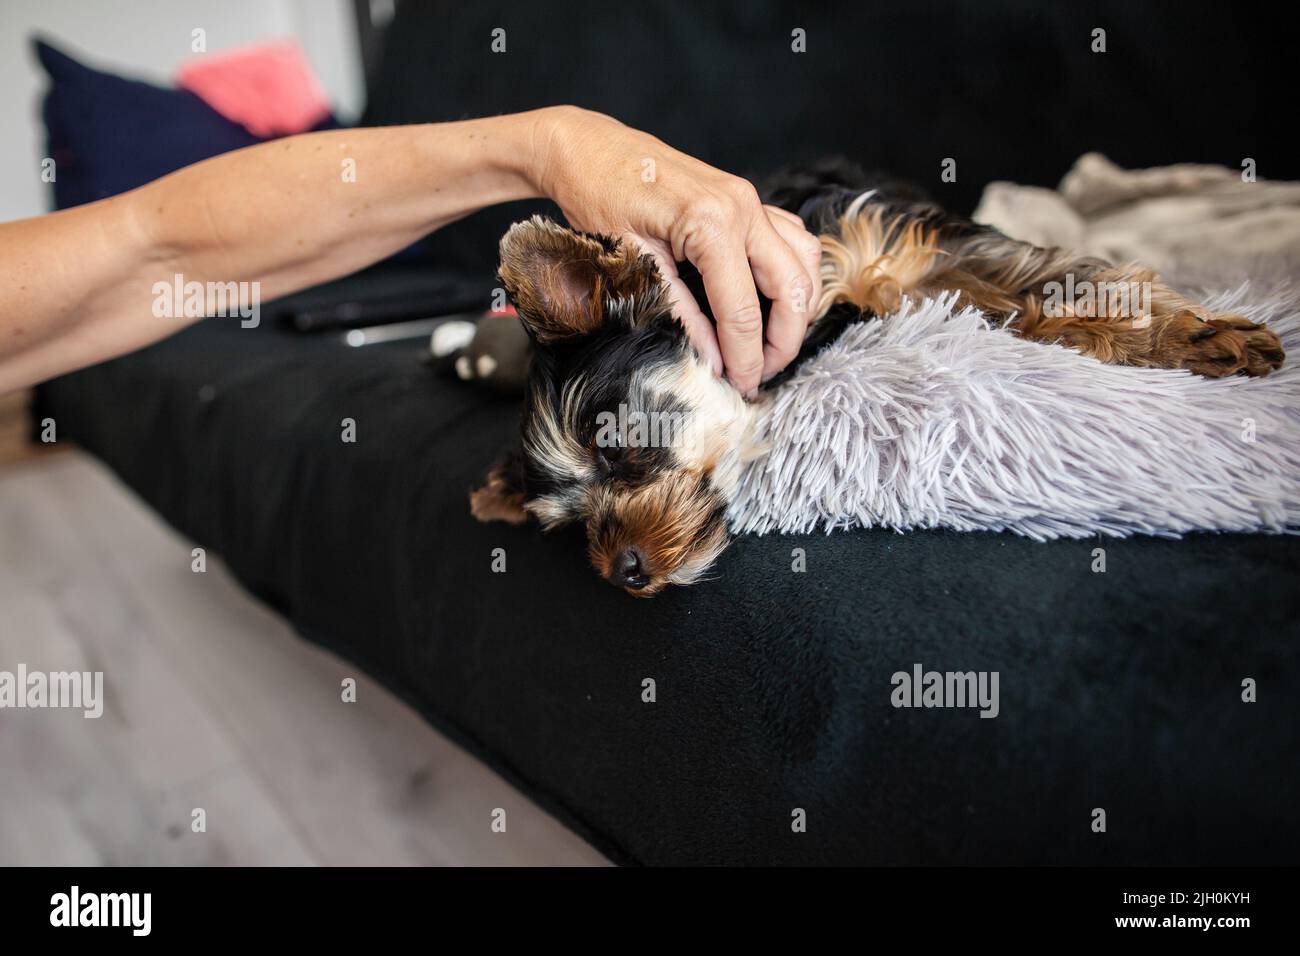 Gros plan d'un chien de terrier du yorkshire qui s'est posé sur un canapé, un chien de compagnie sur un canapé, adorable mini-terrier du yorkshire, un chiot brun clair noir Banque D'Images